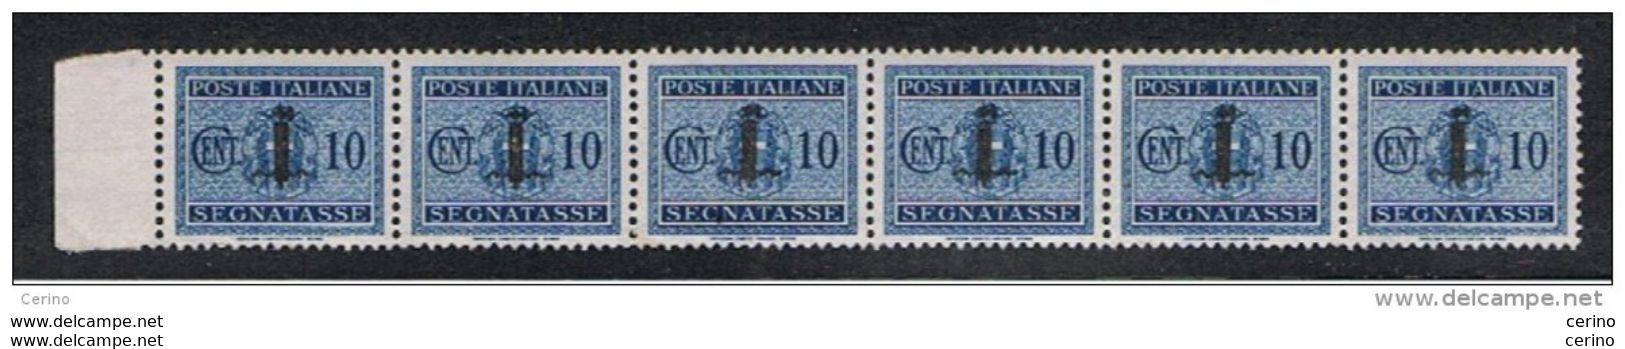 R.S.I.:  1944  TASSE  SOPRASTAMPATI  -  10 C. AZZURRO  STRISCIA  6  N. -  SASS. 61 - Taxe